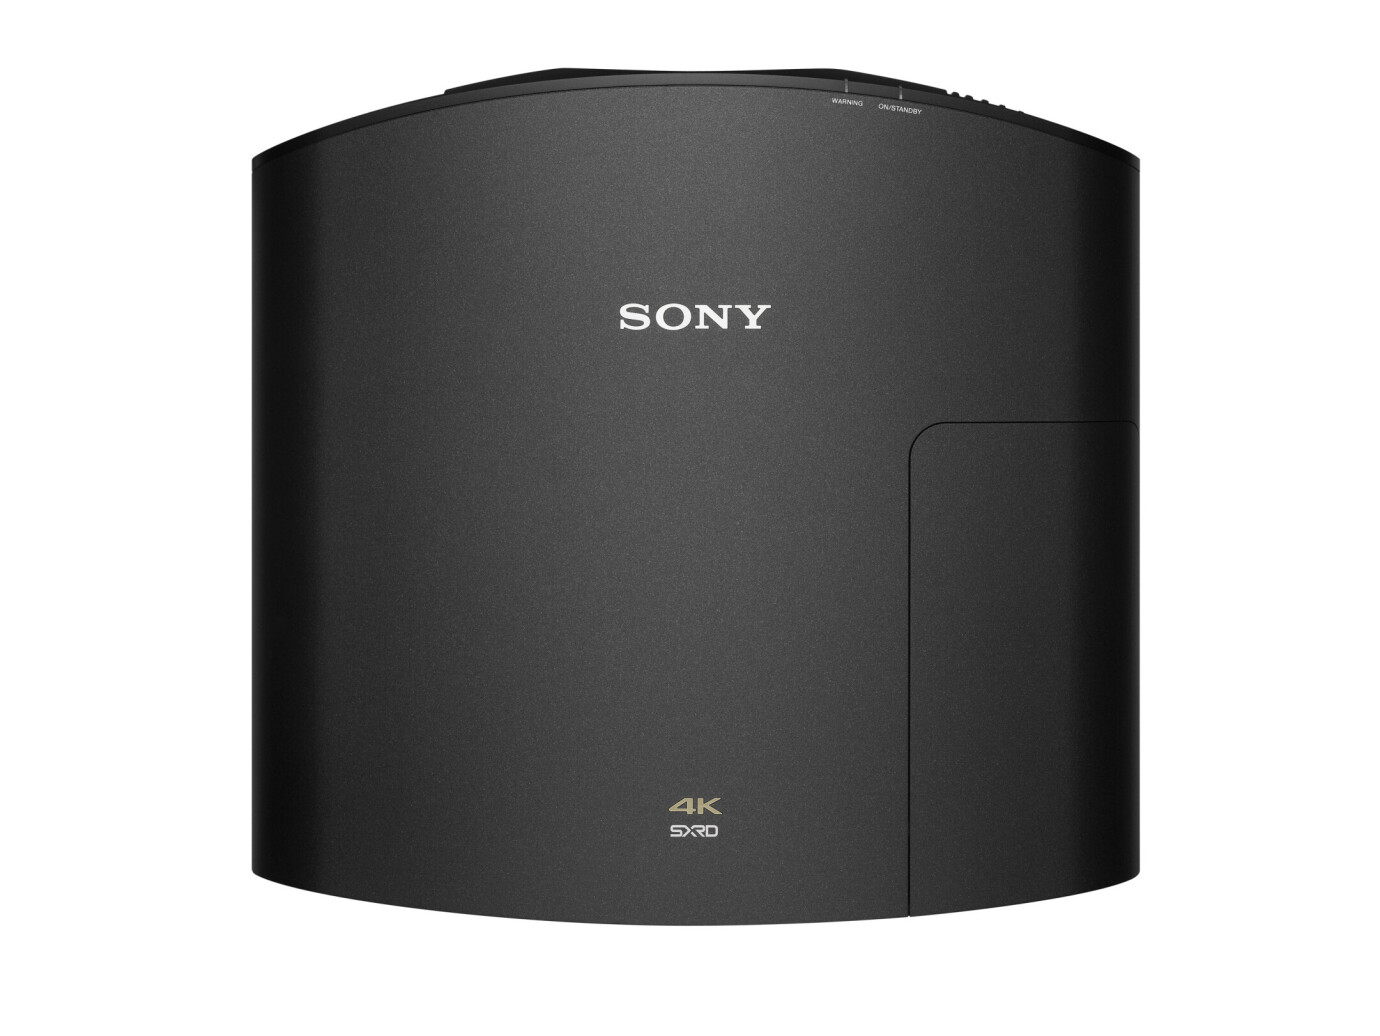 Vorschau: Sony VPL-VW270ES schwarz 4K Beamer mit 1500 ANSI-Lumen und 4096x2160